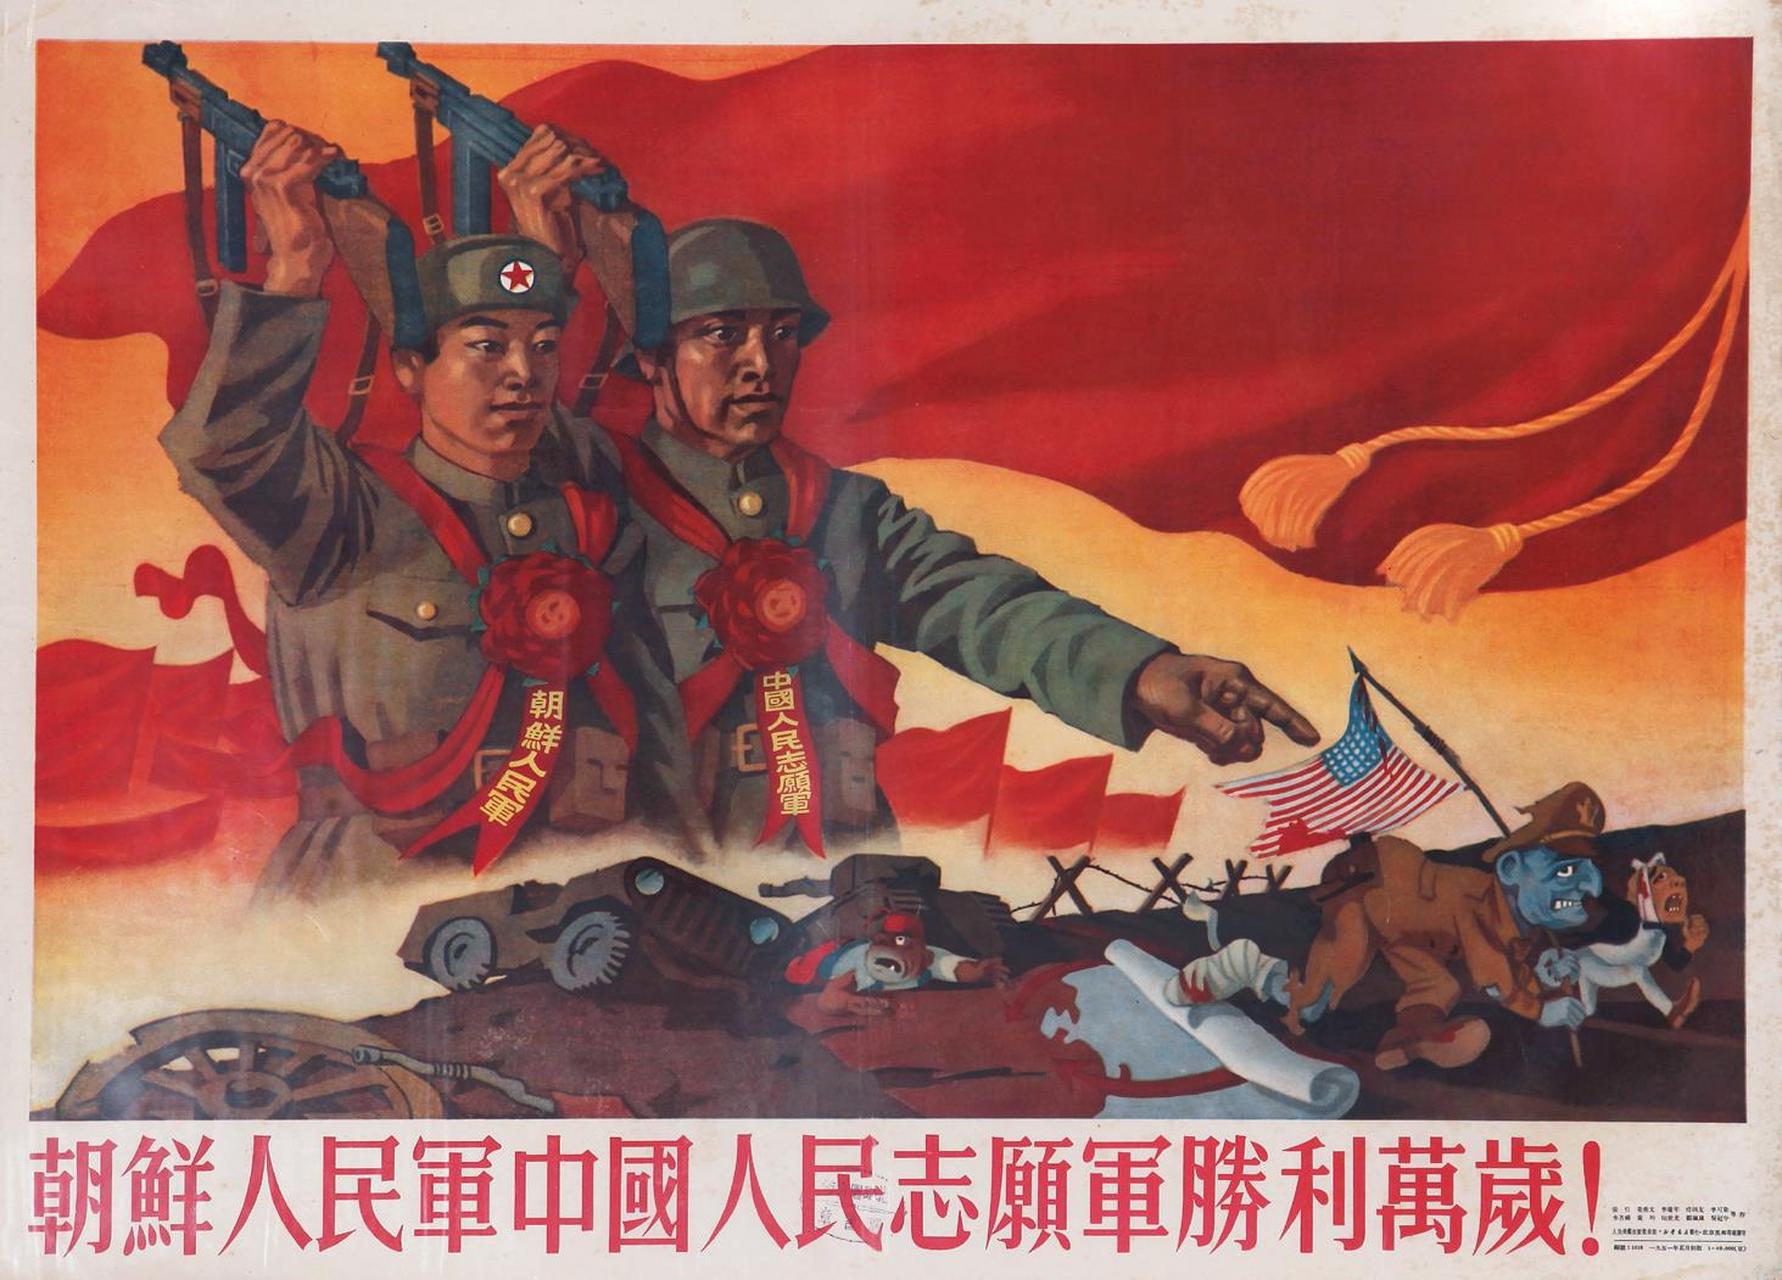 一幅抗美援朝期间中国的宣传画